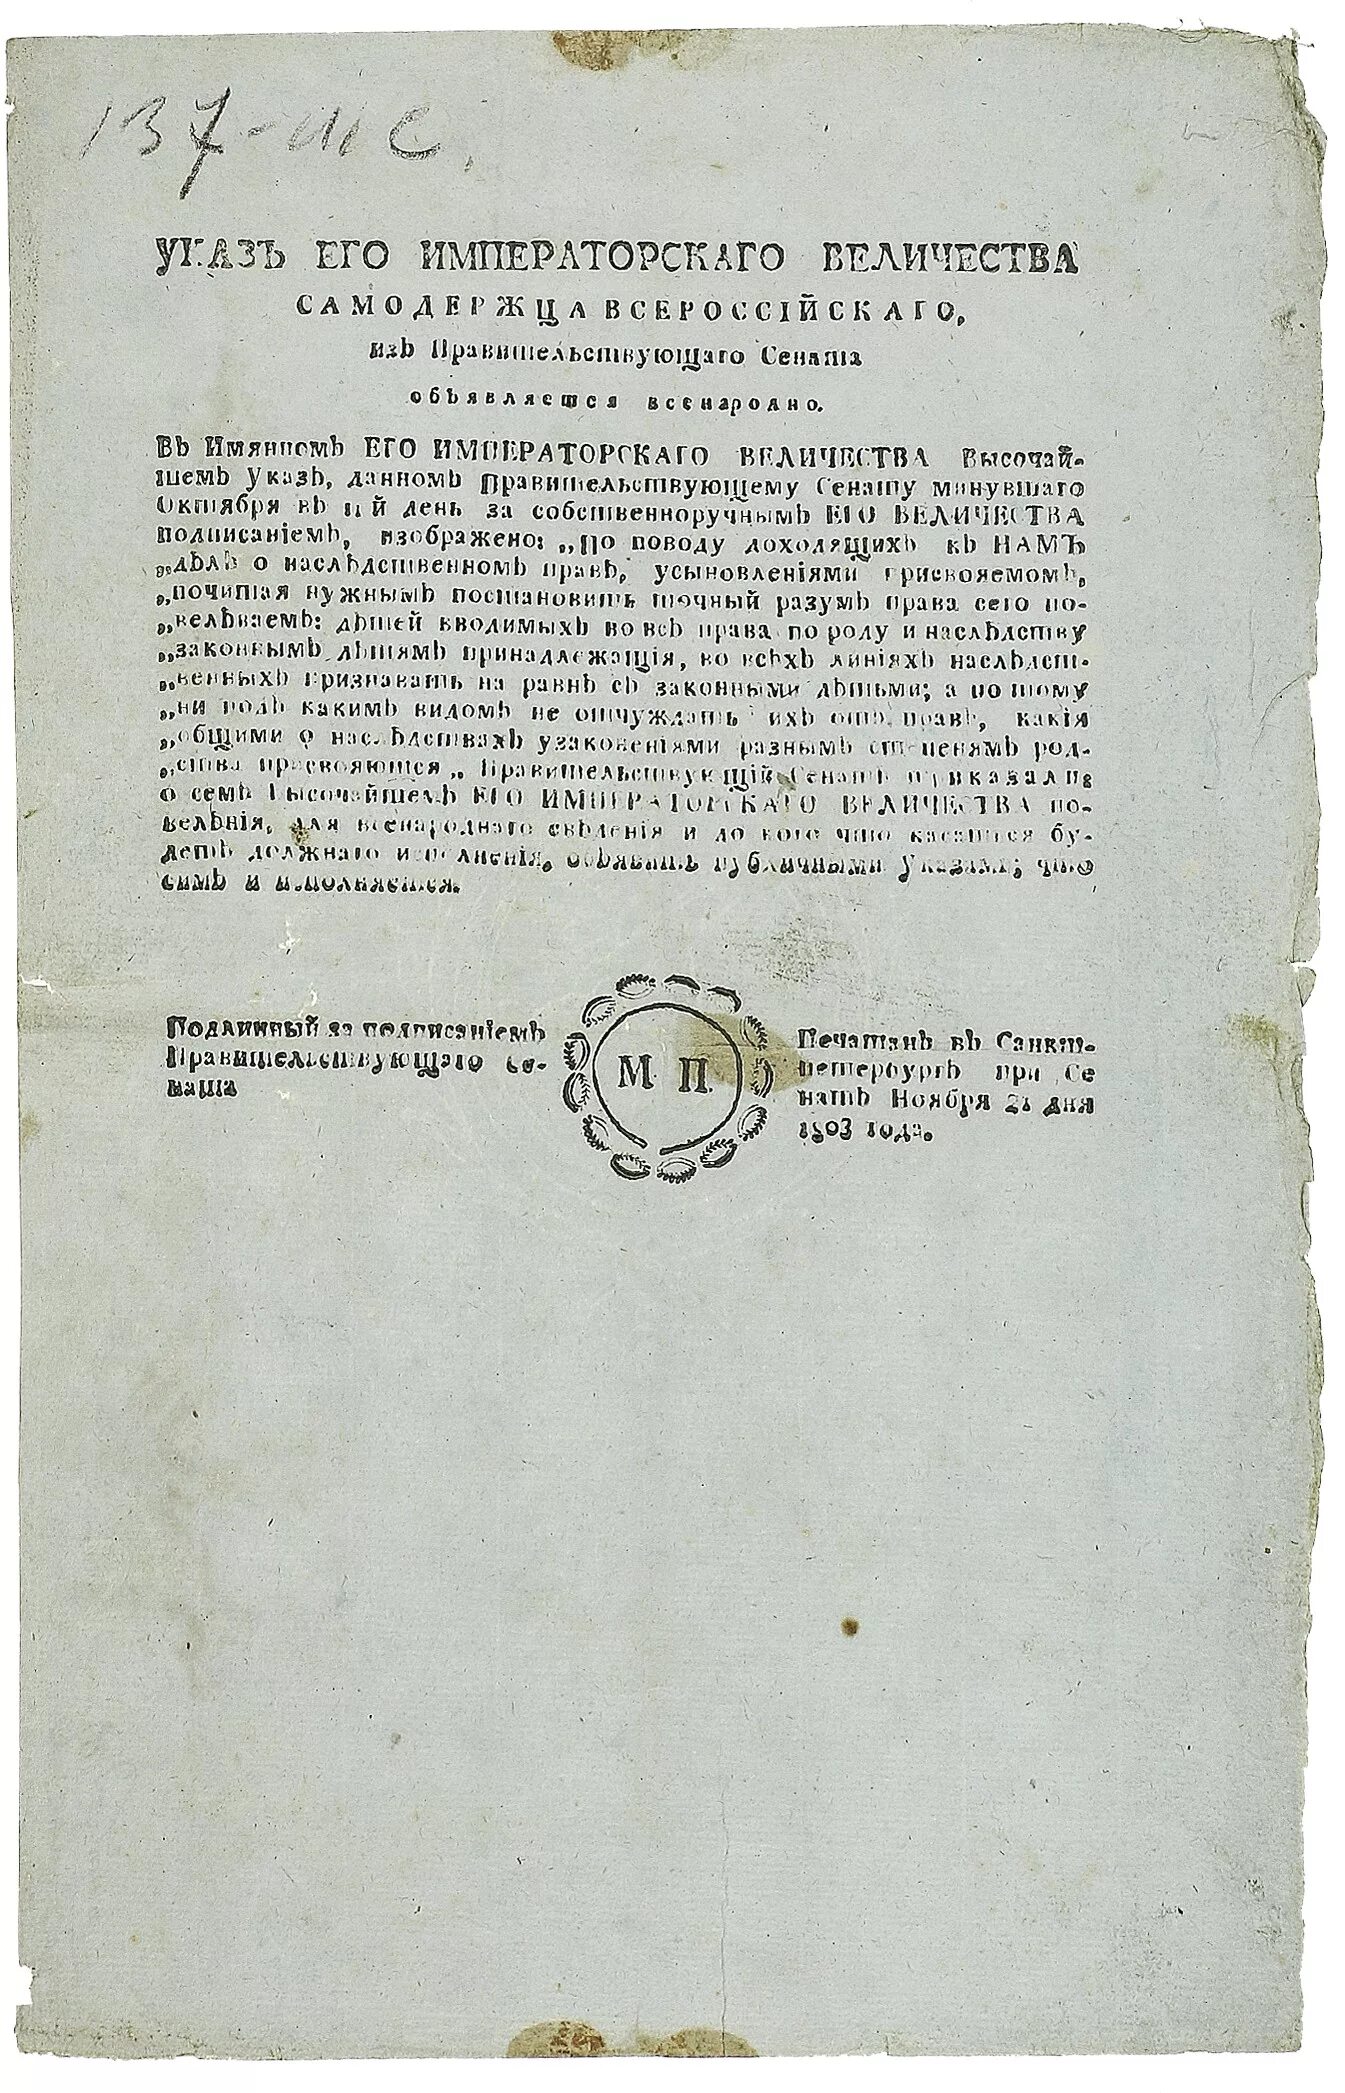 1803 год указ о вольных